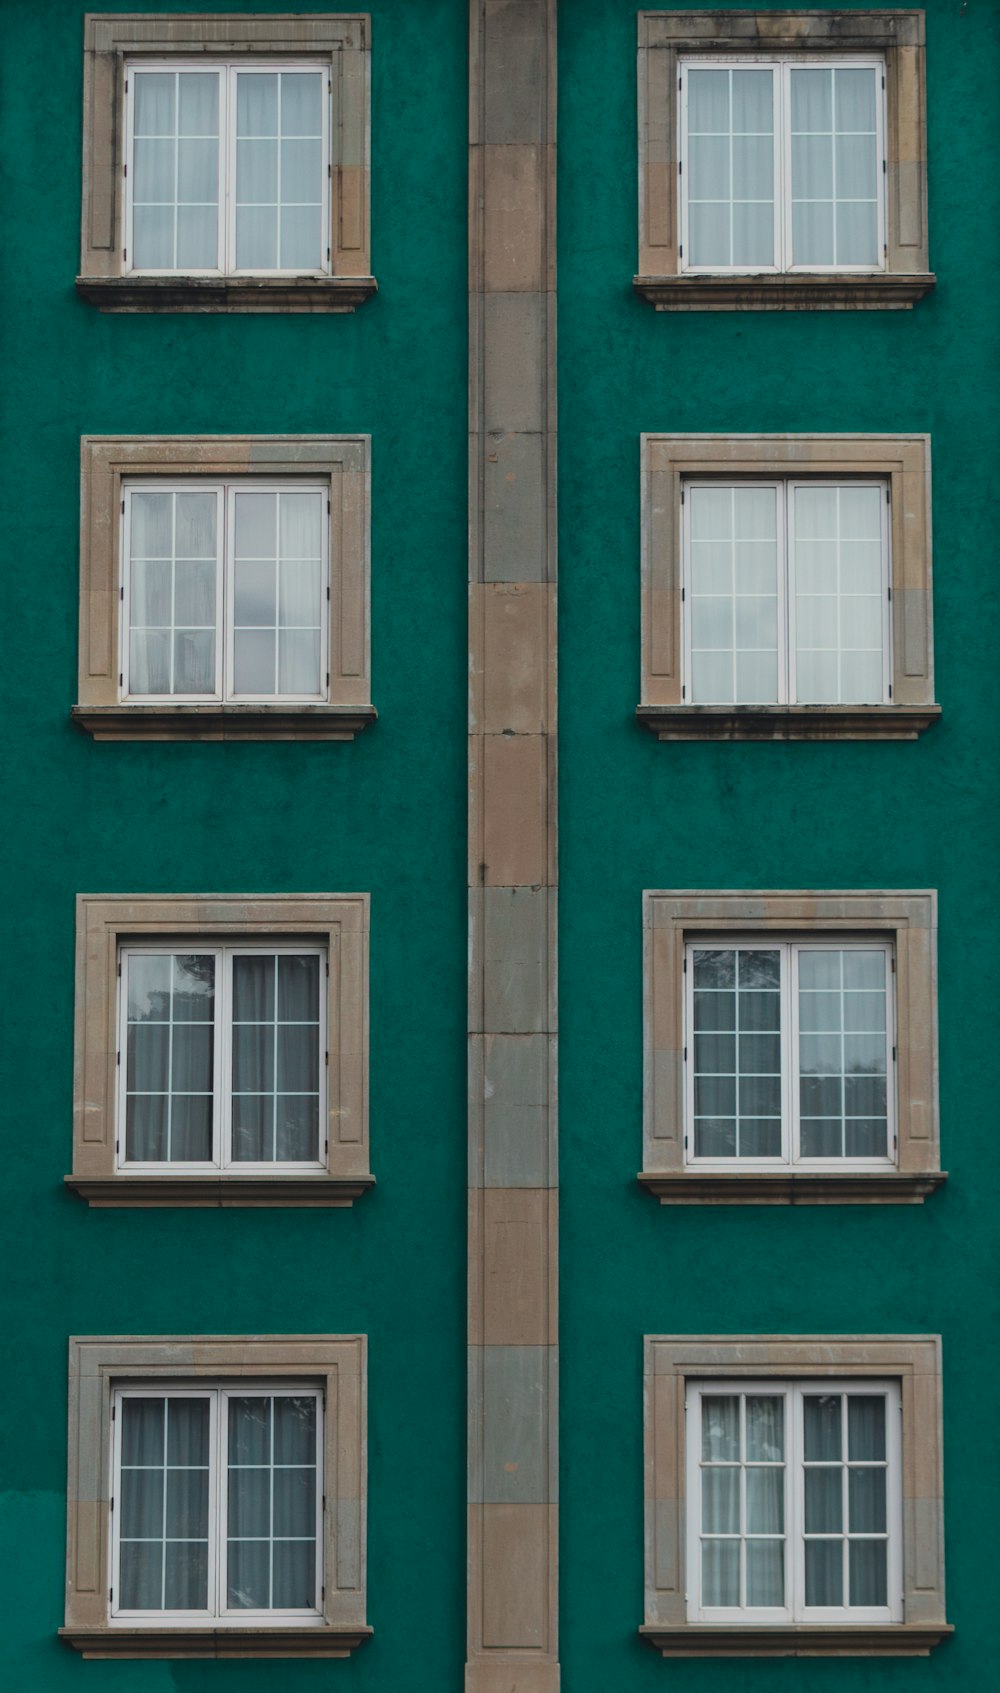 Ein grünes Gebäude mit mehreren Fenstern und einer Uhr